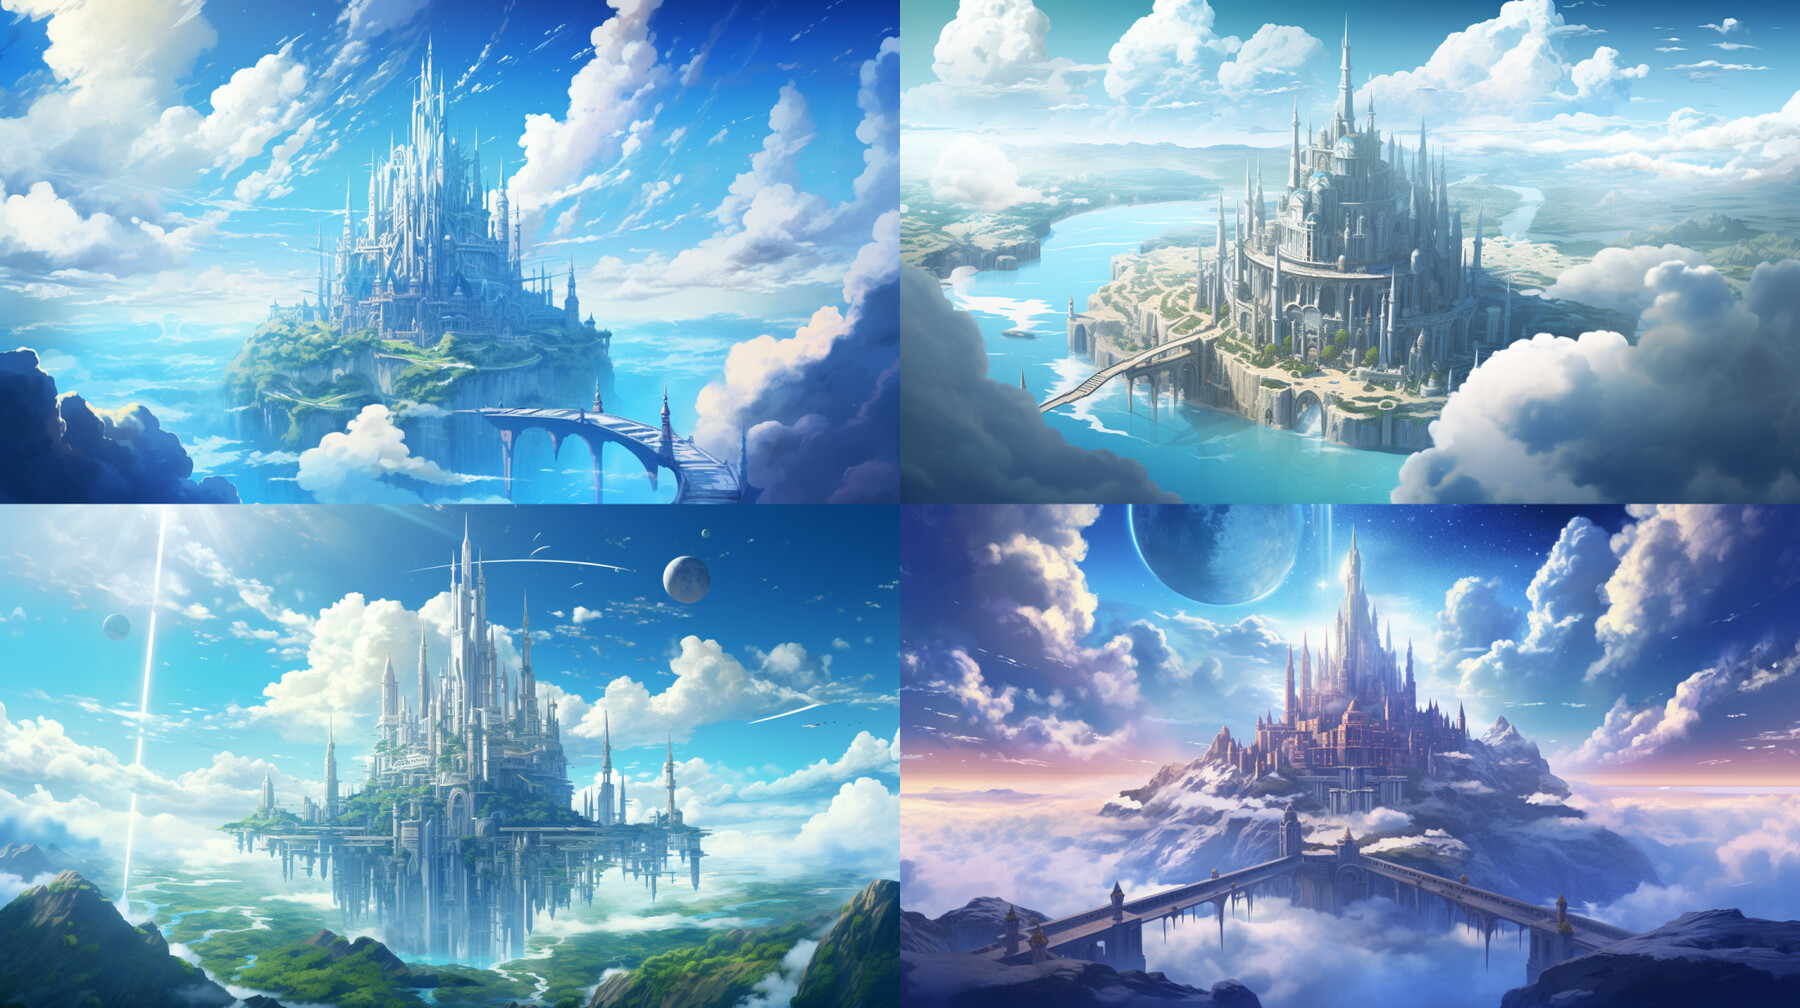 HD anime castle wallpapers | Peakpx